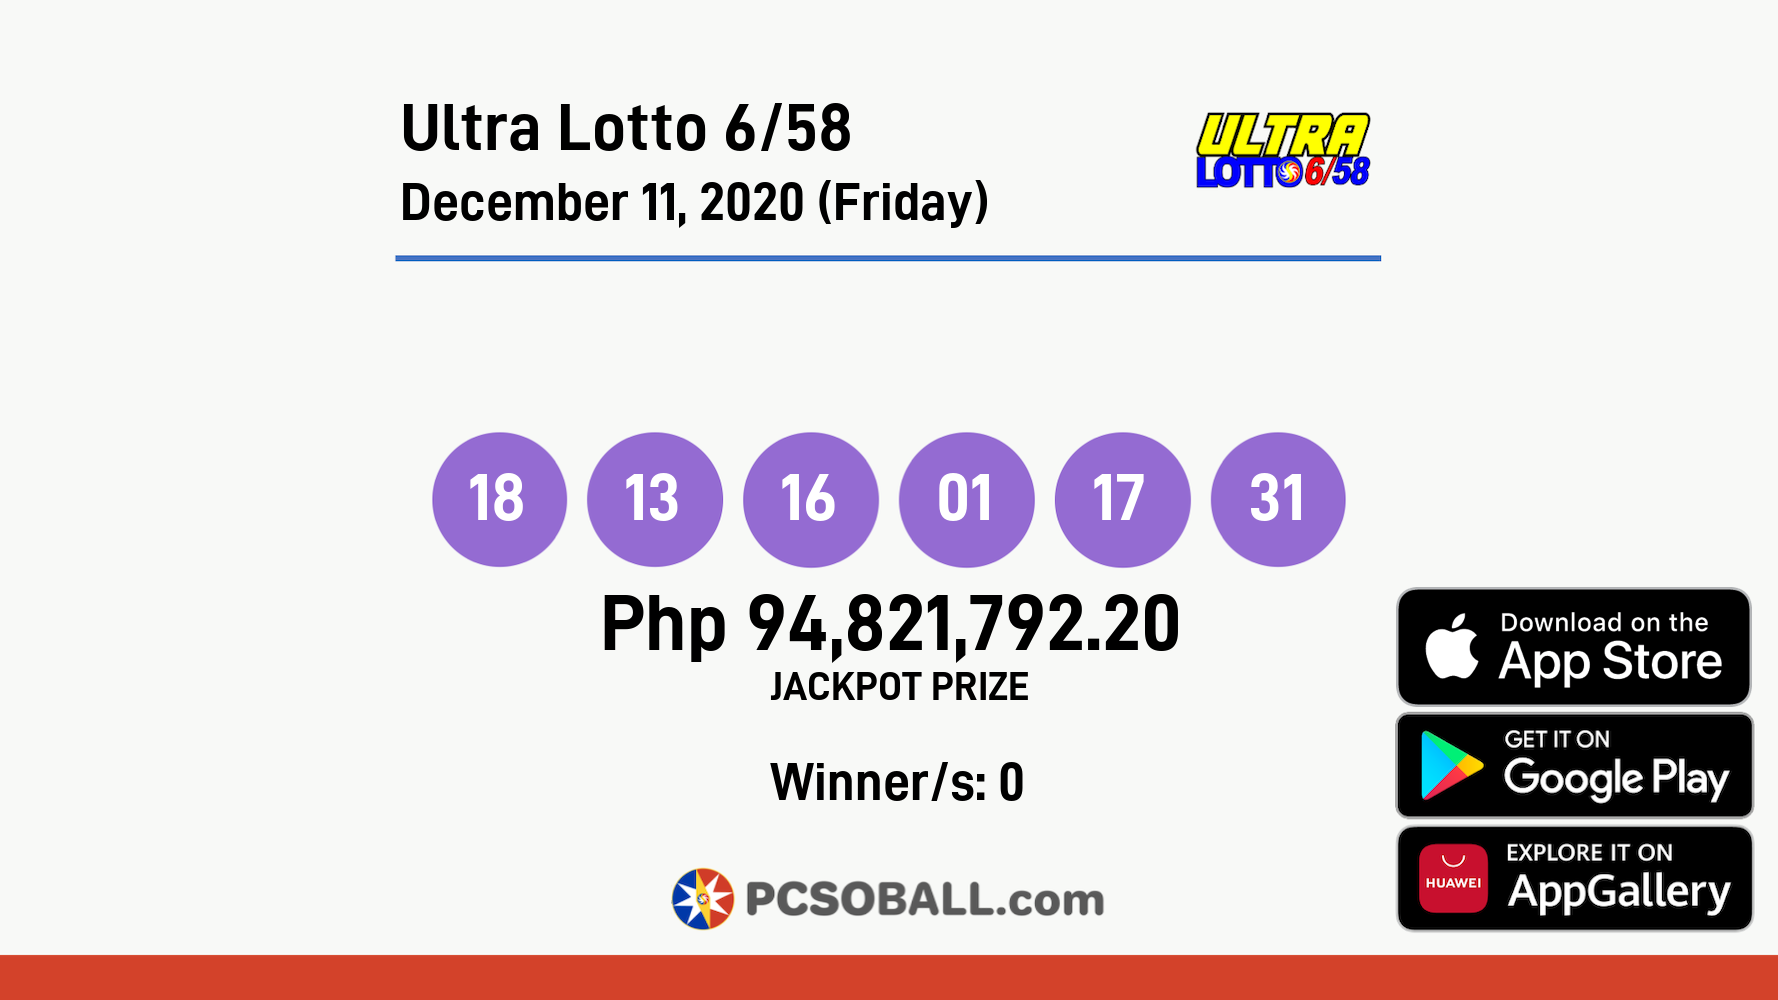 Ultra Lotto 6/58 December 11, 2020 (Friday) Result